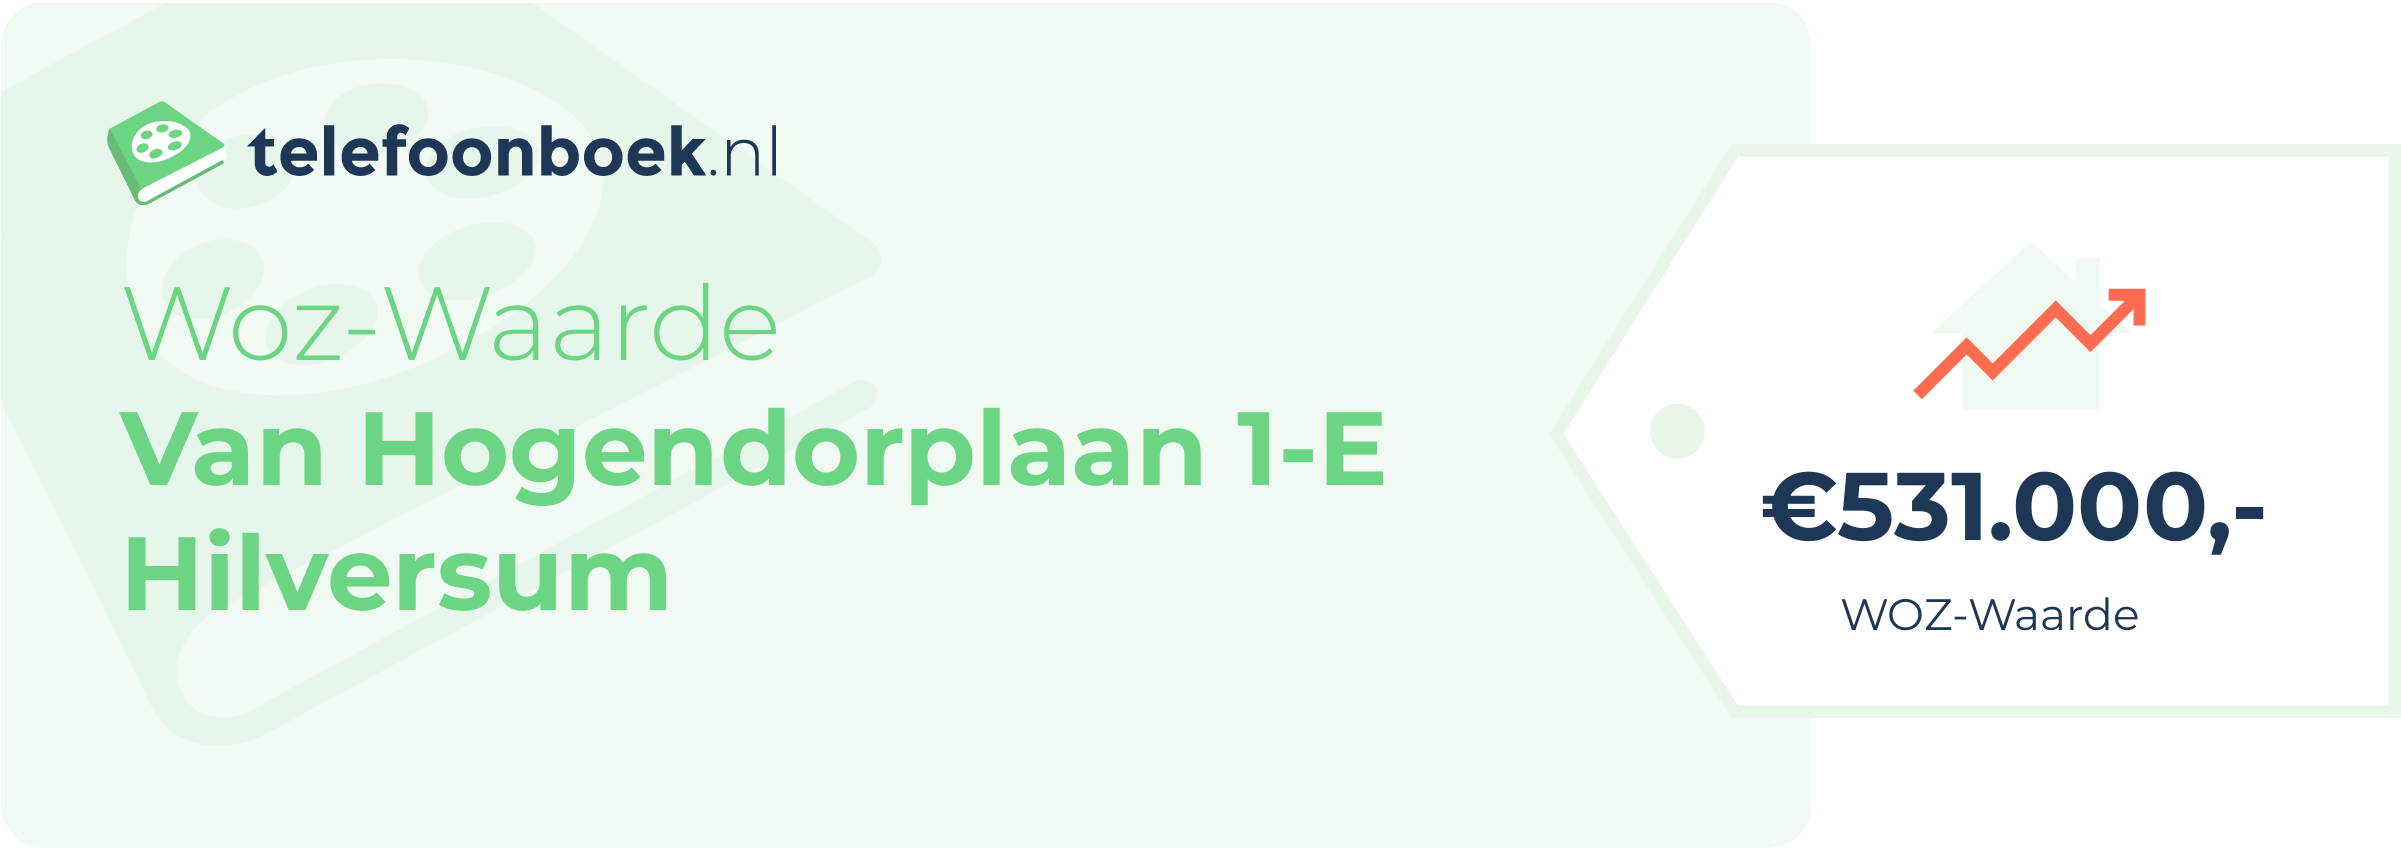 WOZ-waarde Van Hogendorplaan 1-E Hilversum